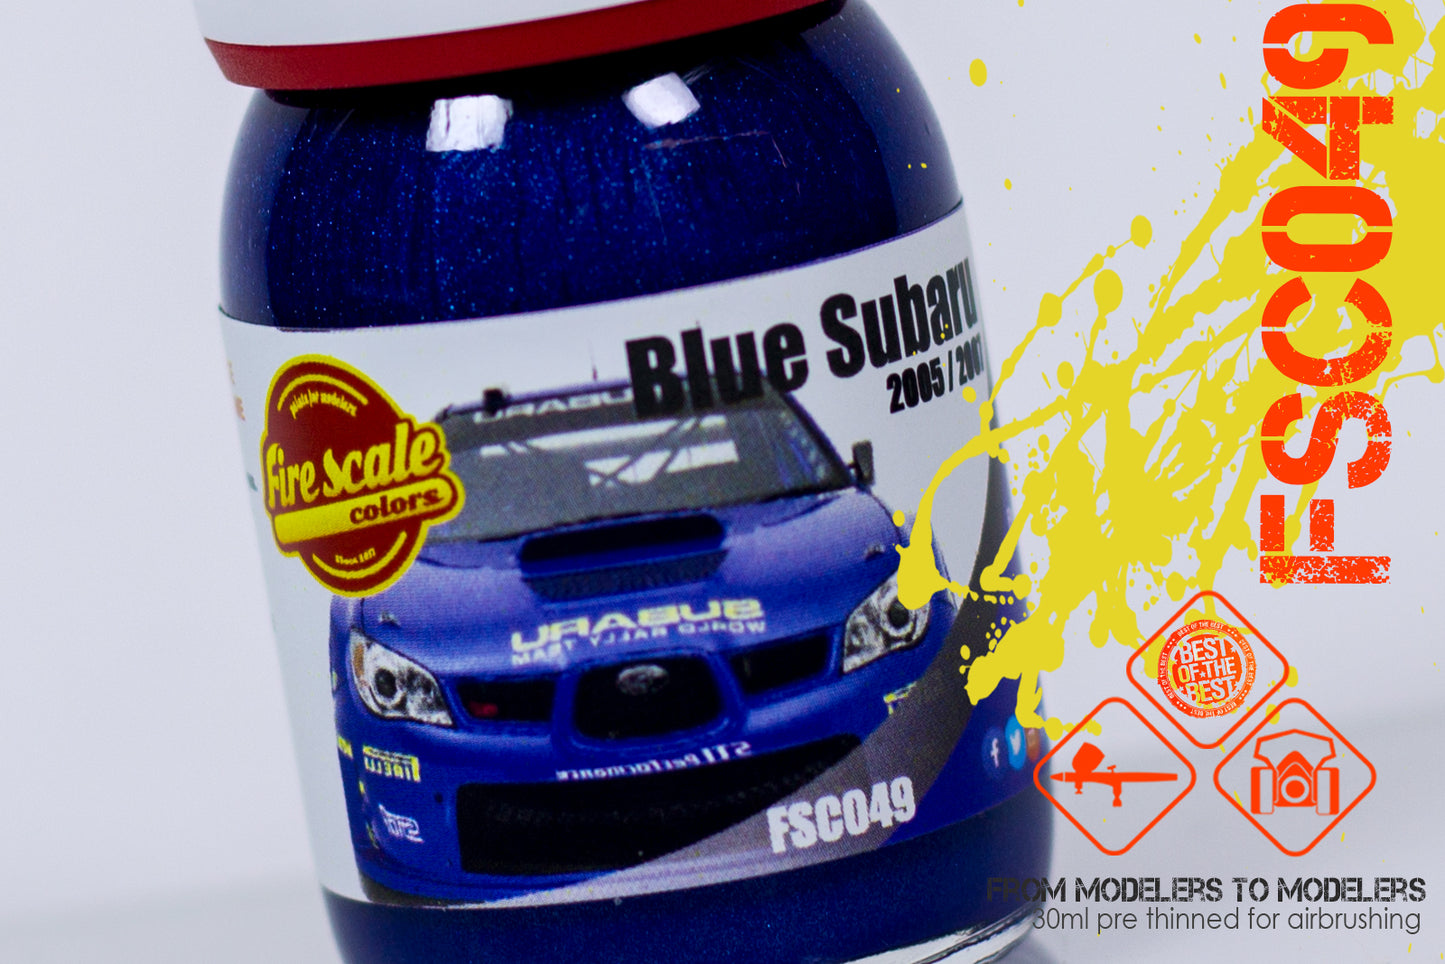 Blue Subaru